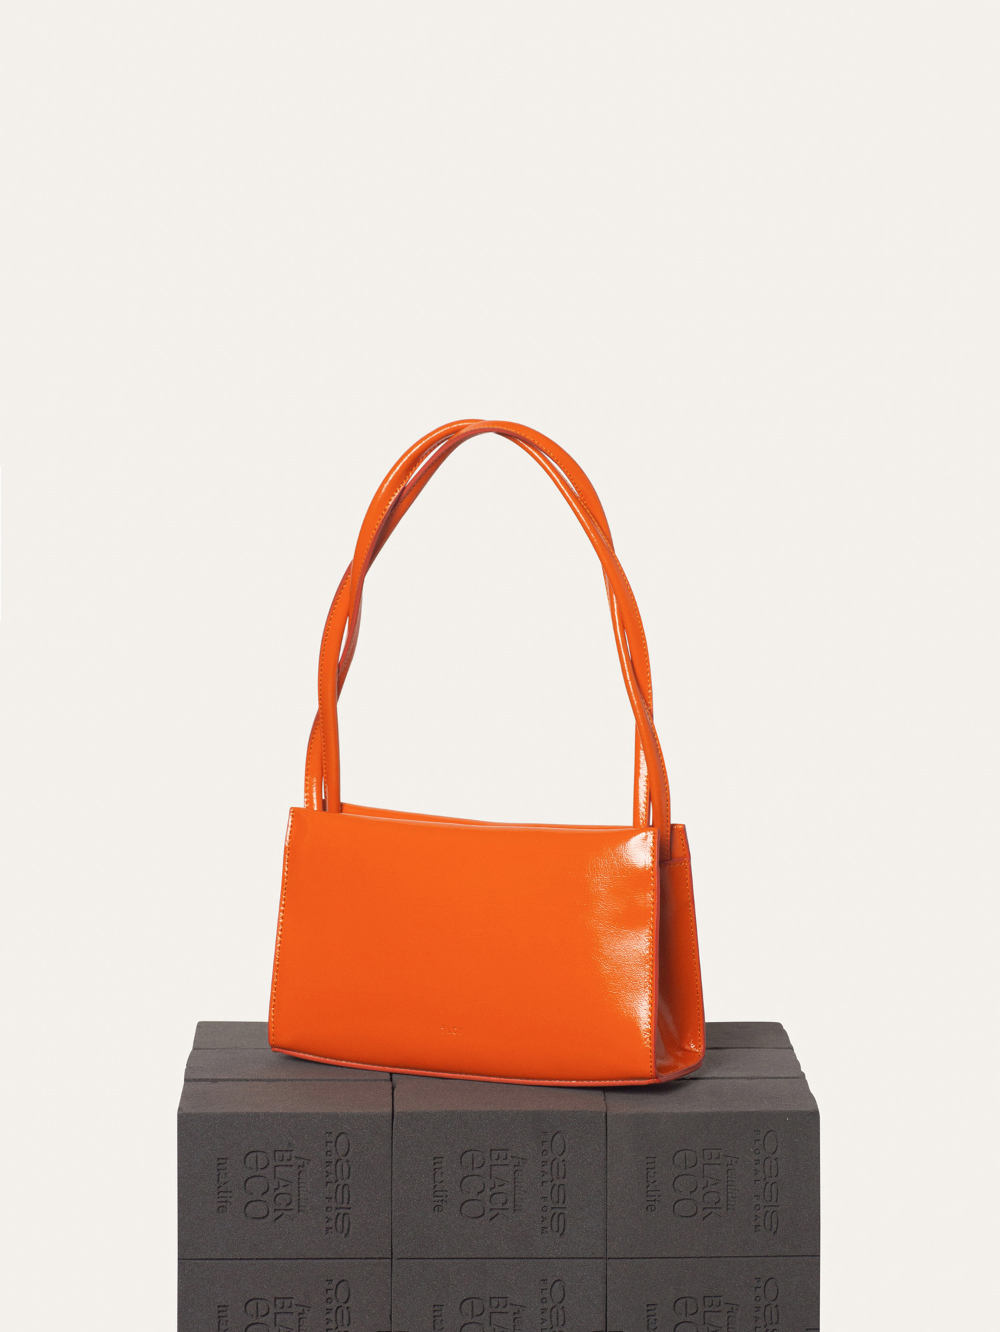 bag orange color image-S8L4